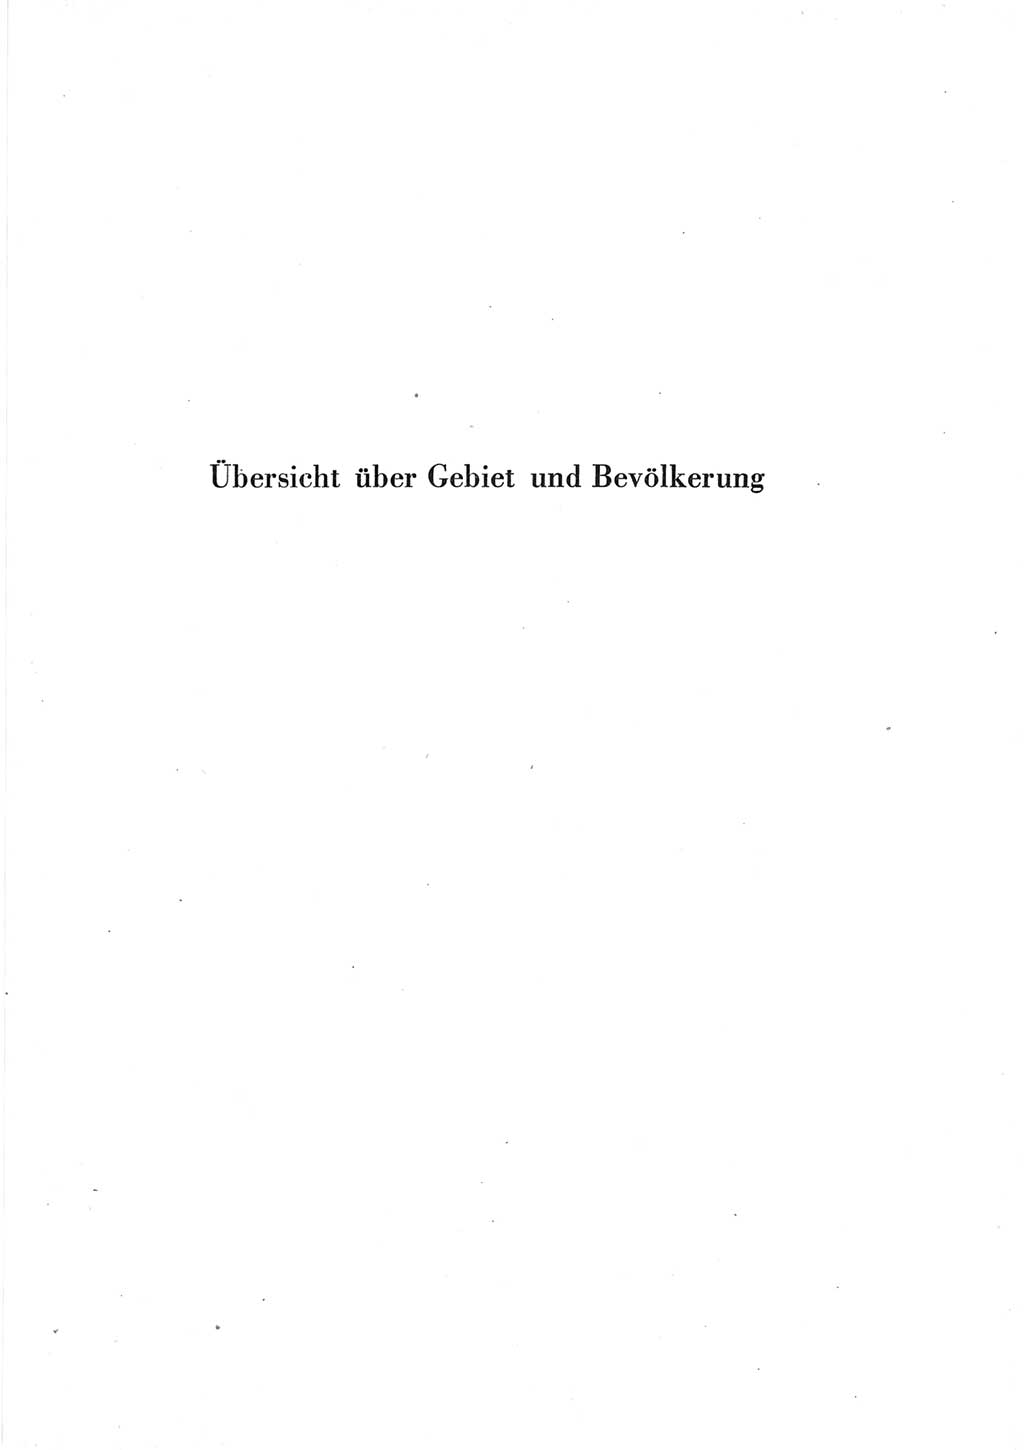 Statistisches Jahrbuch der Deutschen Demokratischen Republik (DDR) 1965, Seite 1 (Stat. Jb. DDR 1965, S. 1)